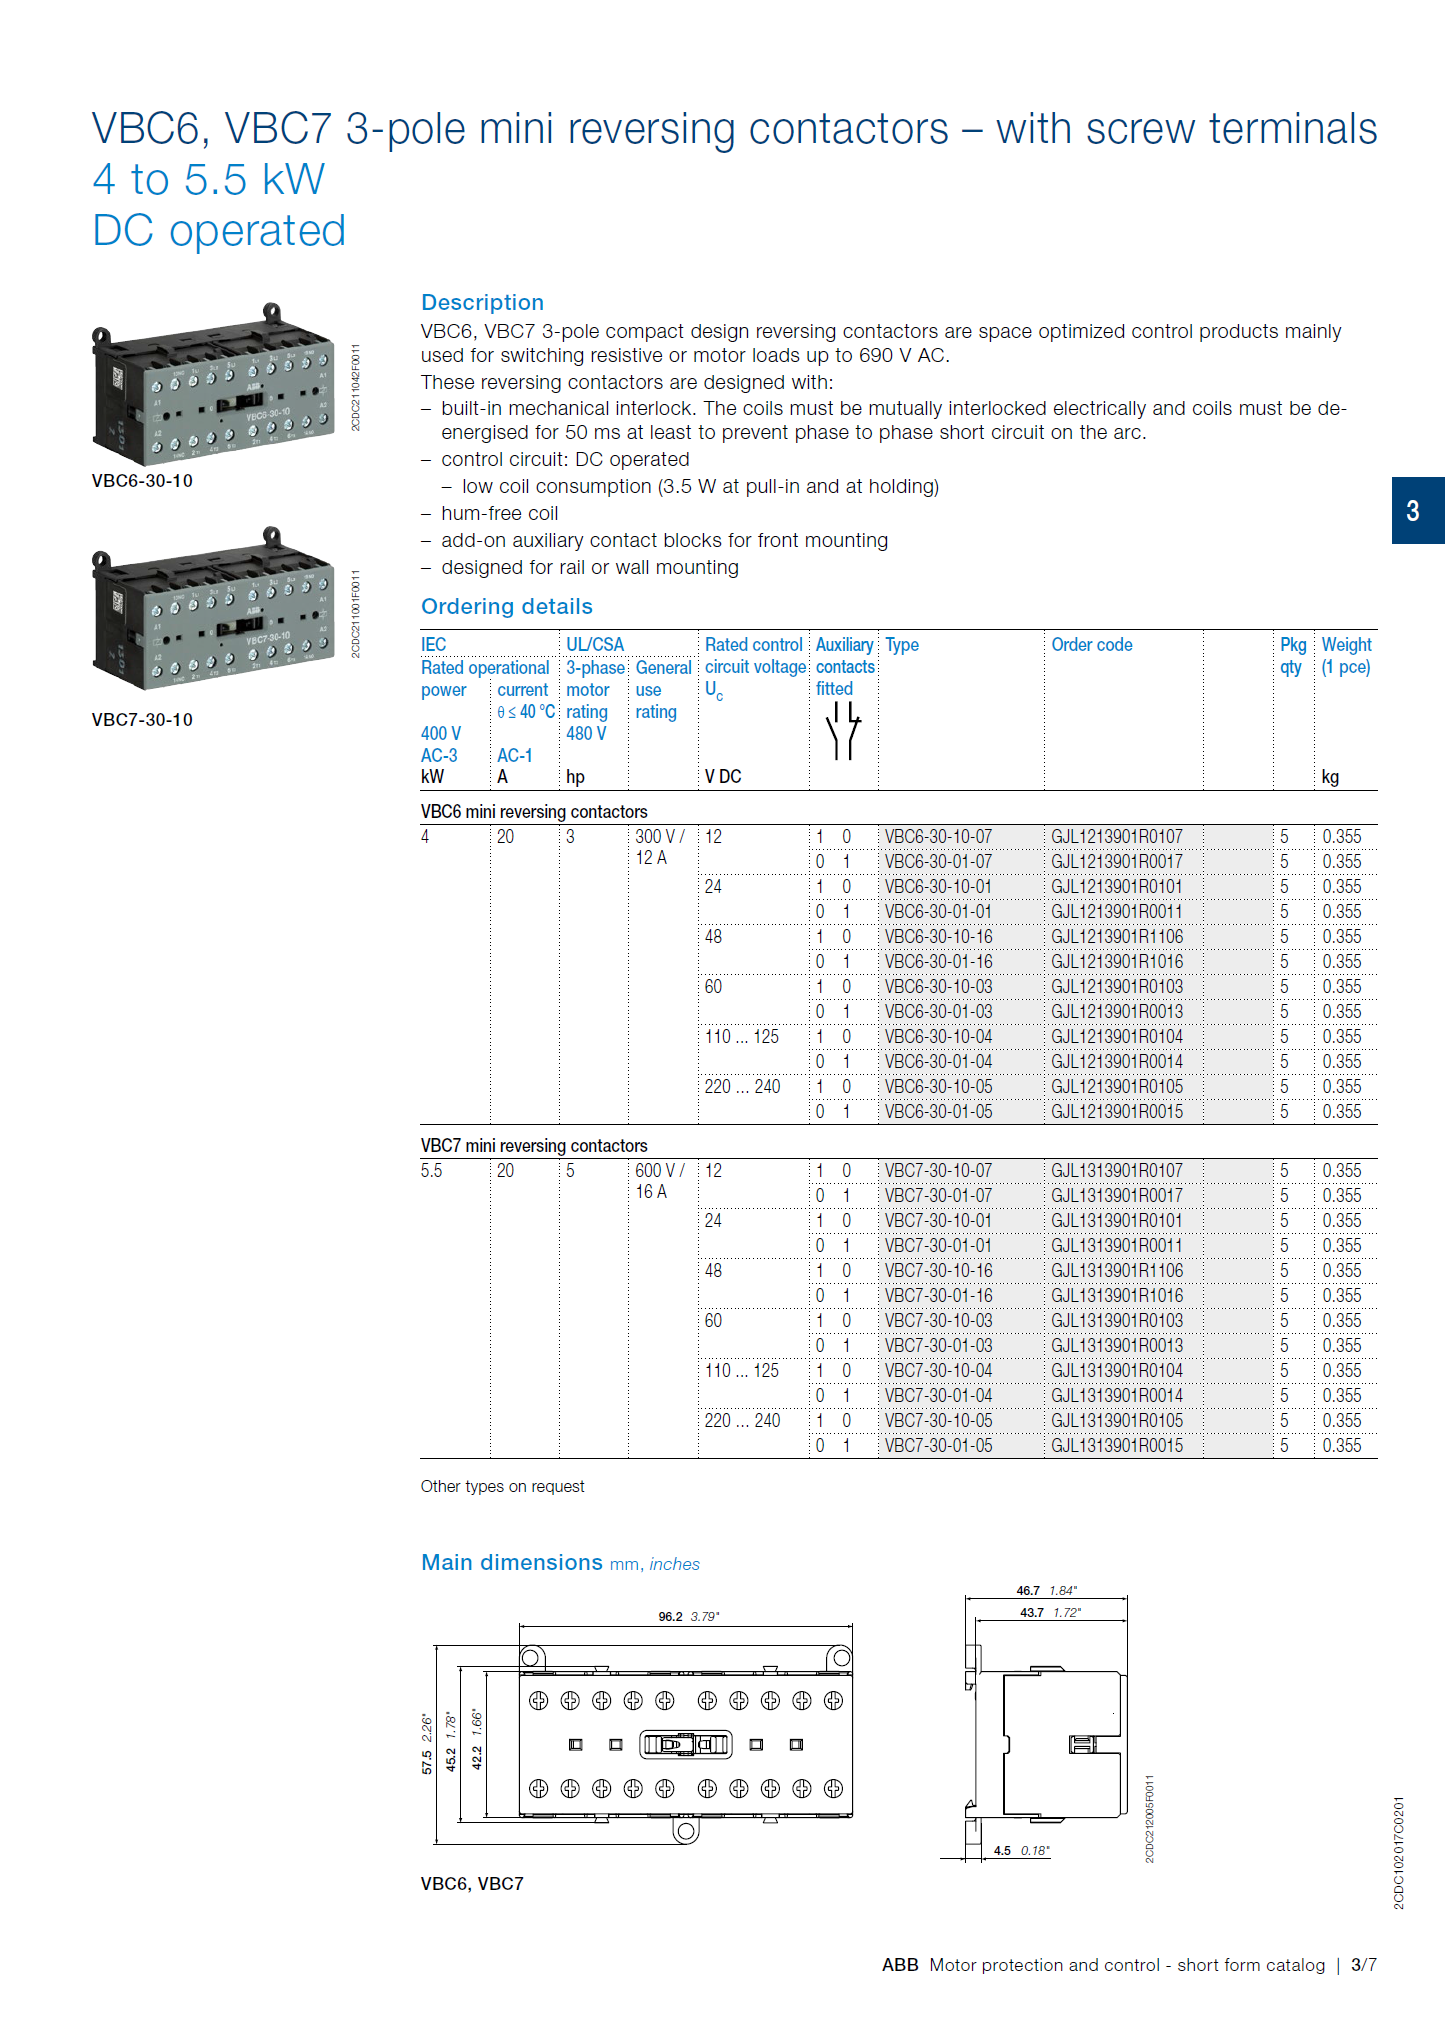 ABB B6, B7 series mini contactors base: VB7A-30-01